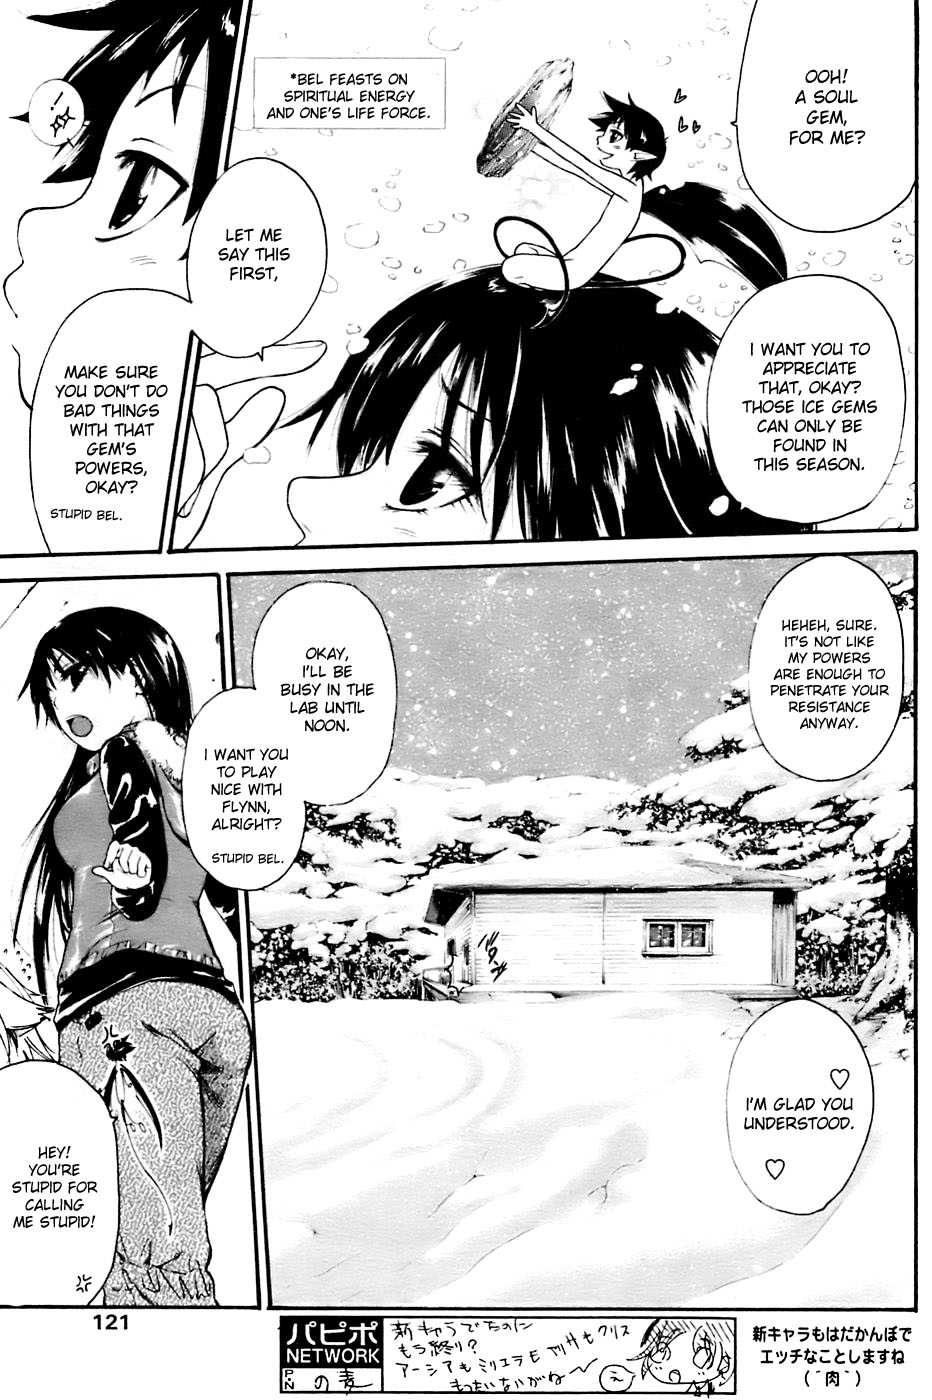 [Kunimitsu Suwa] Kyou no Wanko day 2 [ENG] page 5 full